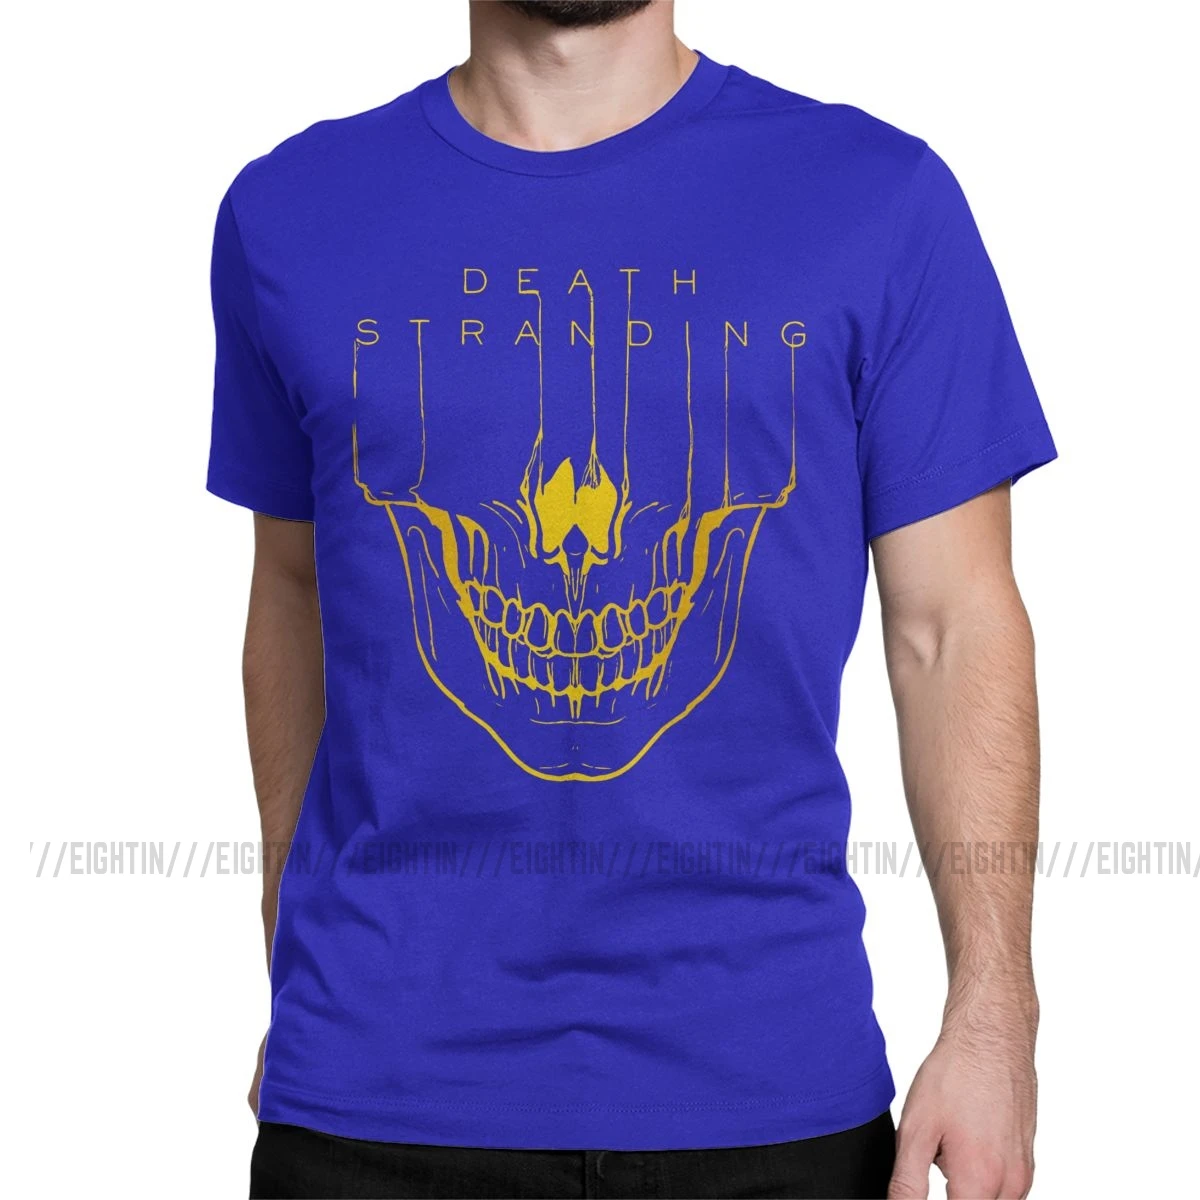 Мужская футболка с надписью "Death Stranding", Кодзима Хидео, металлическая шестерня, одноцветная футболка с коротким рукавом из хлопка с изображением игры "Reedus Norman Game Mgs", 4XL, 5XL, футболка - Цвет: Синий